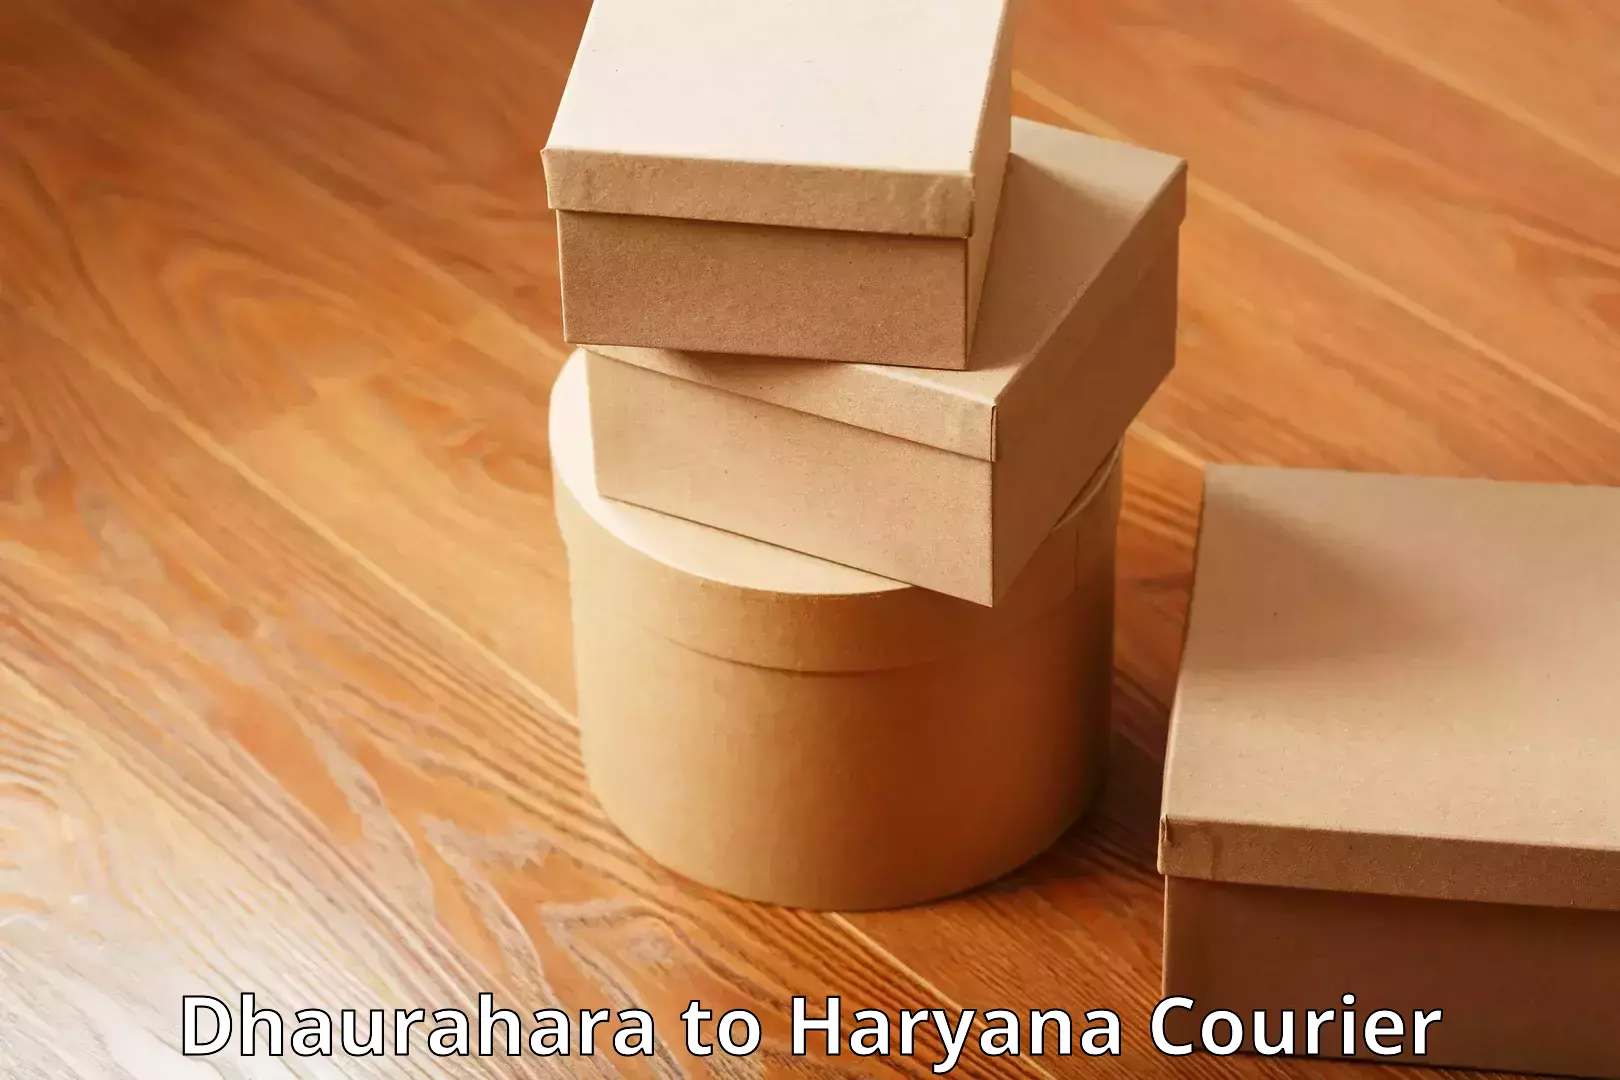 Baggage shipping service Dhaurahara to Haryana